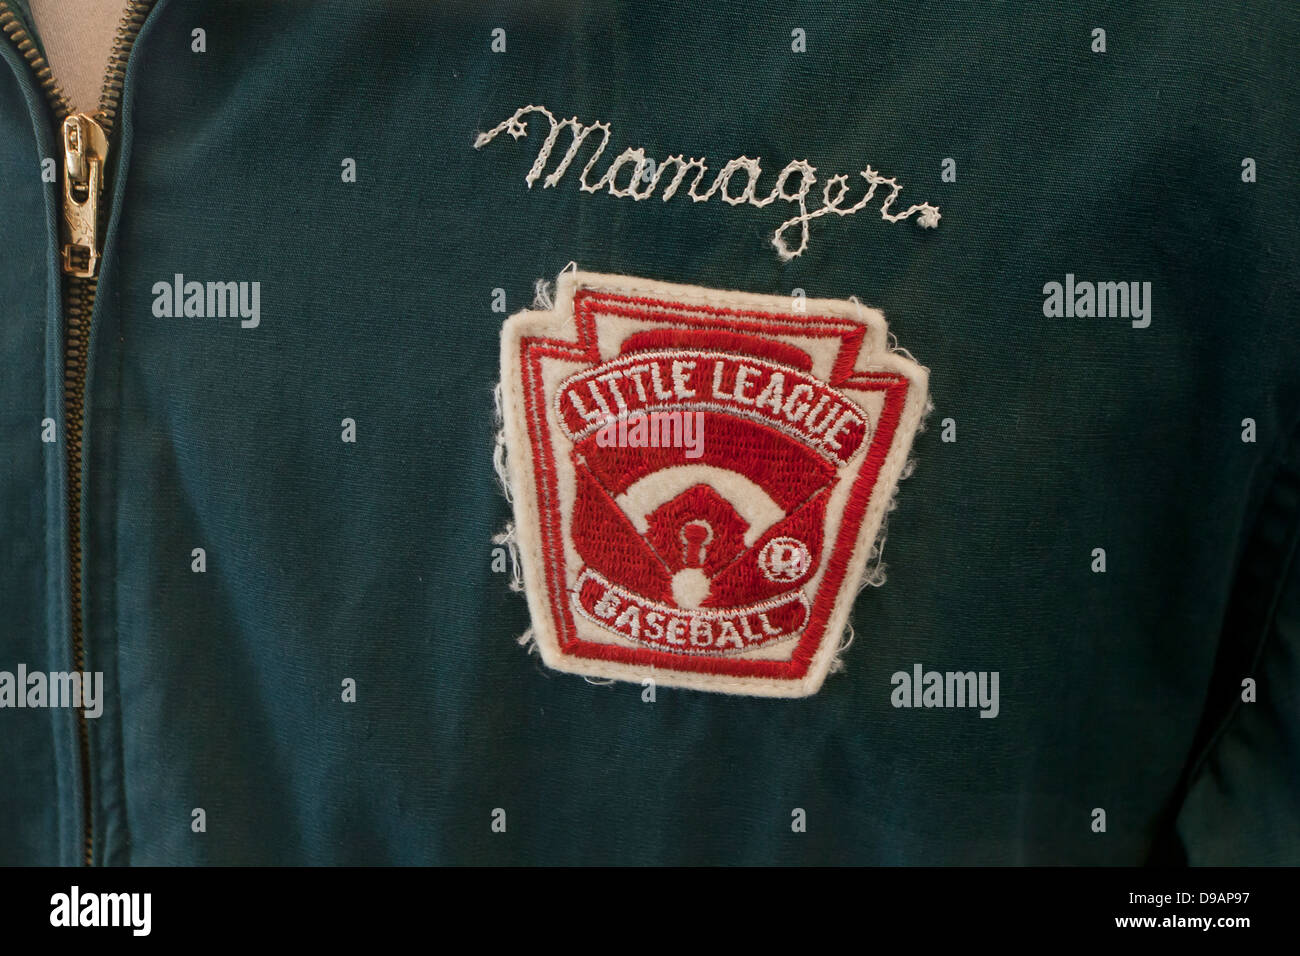 La petite ligue de baseball manager's jacket Banque D'Images